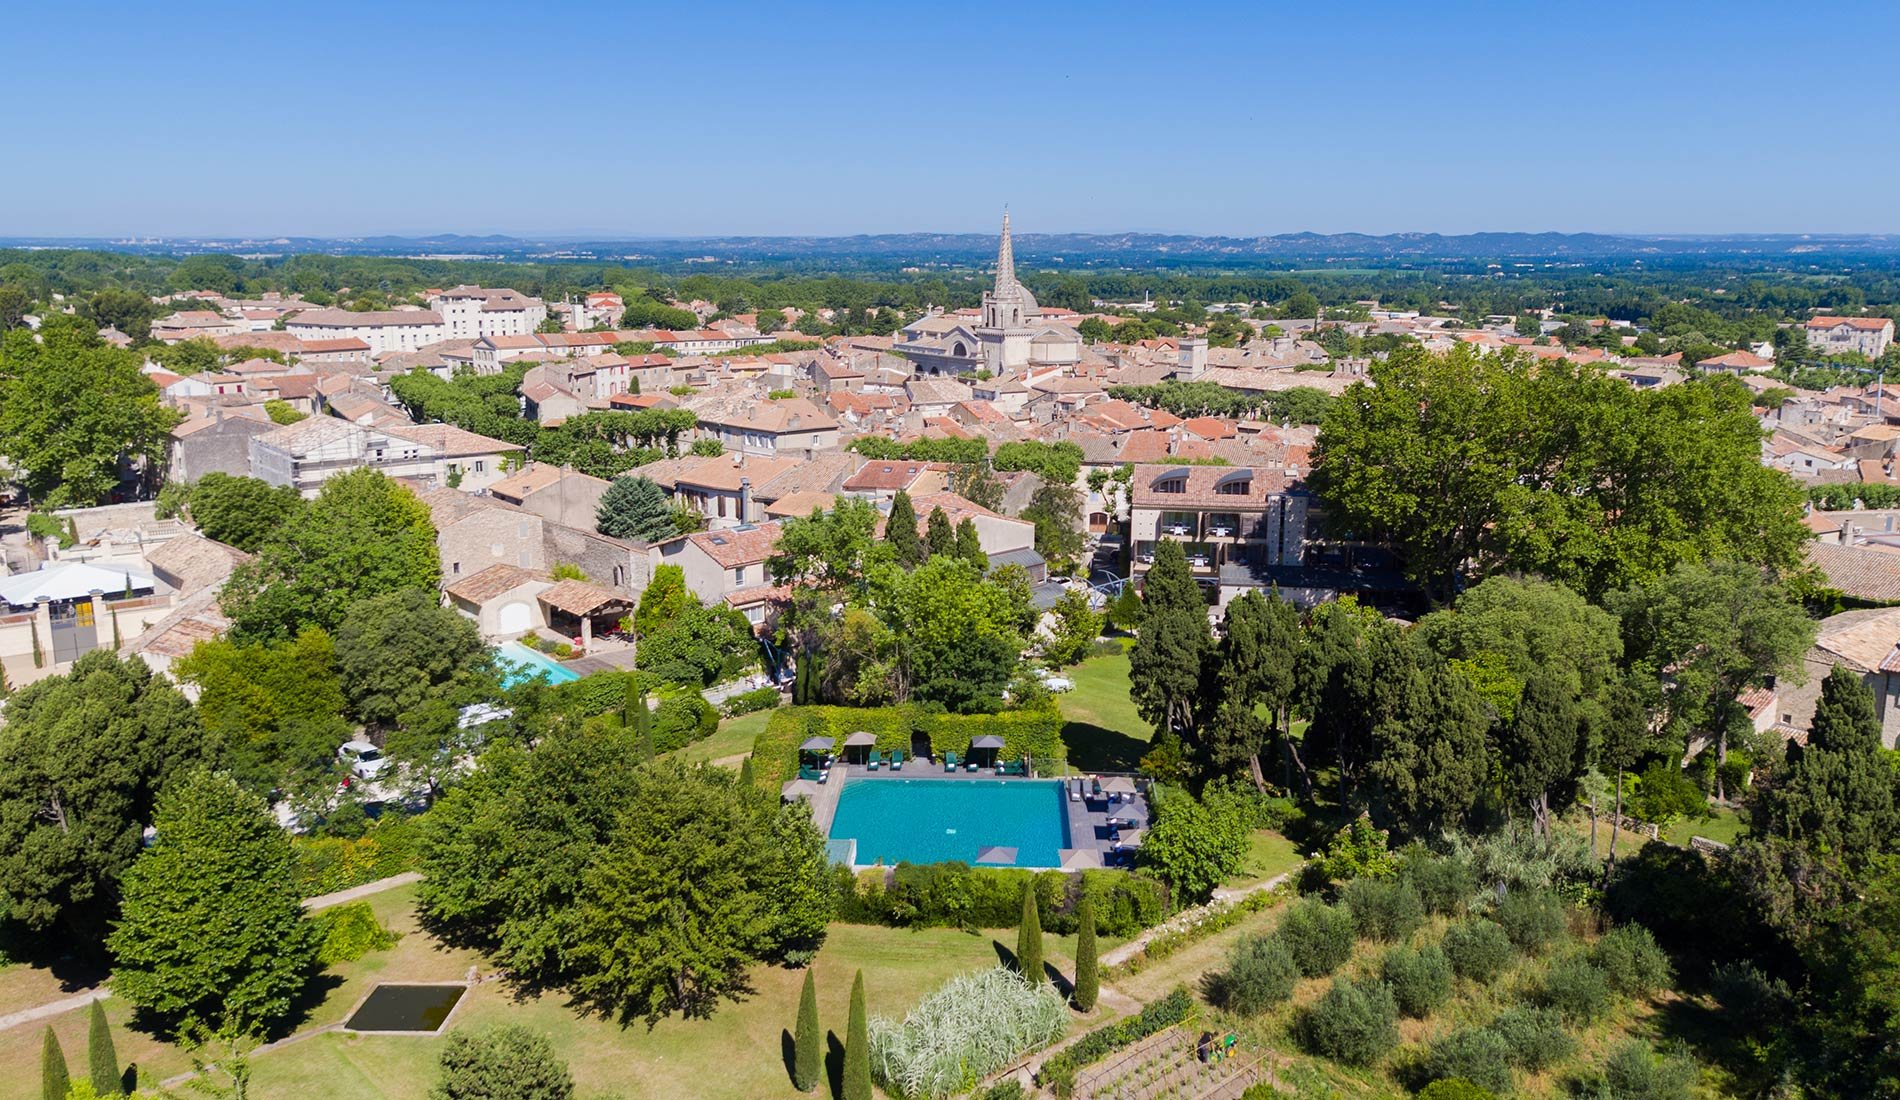 Demeure de charme Hôtel de l'Image 4* Saint-Rémy-de-Provence France vue aérienne